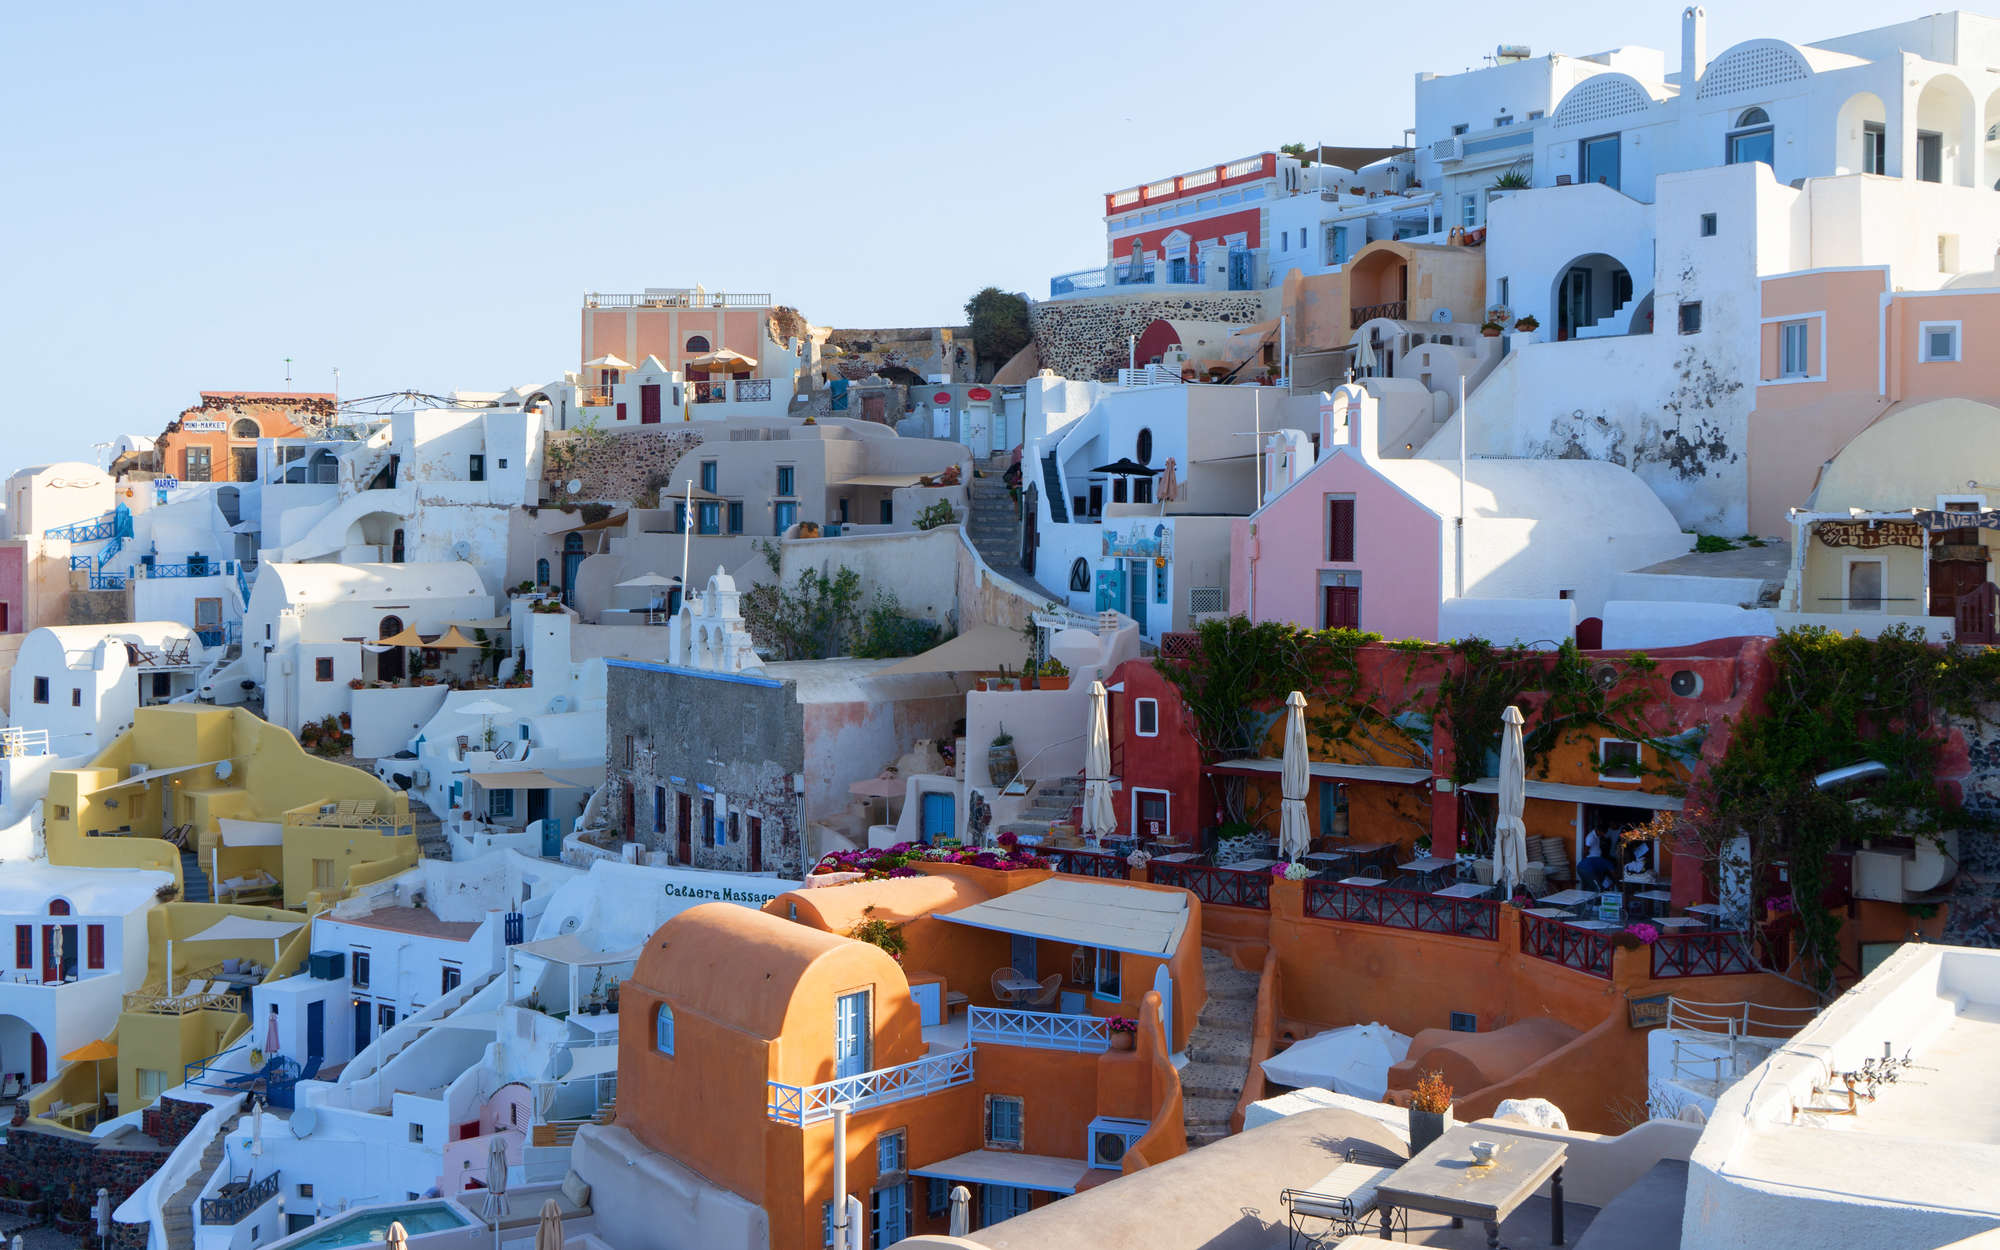             Fototapete Häuser von Santorini – Mattes Glattvlies
        